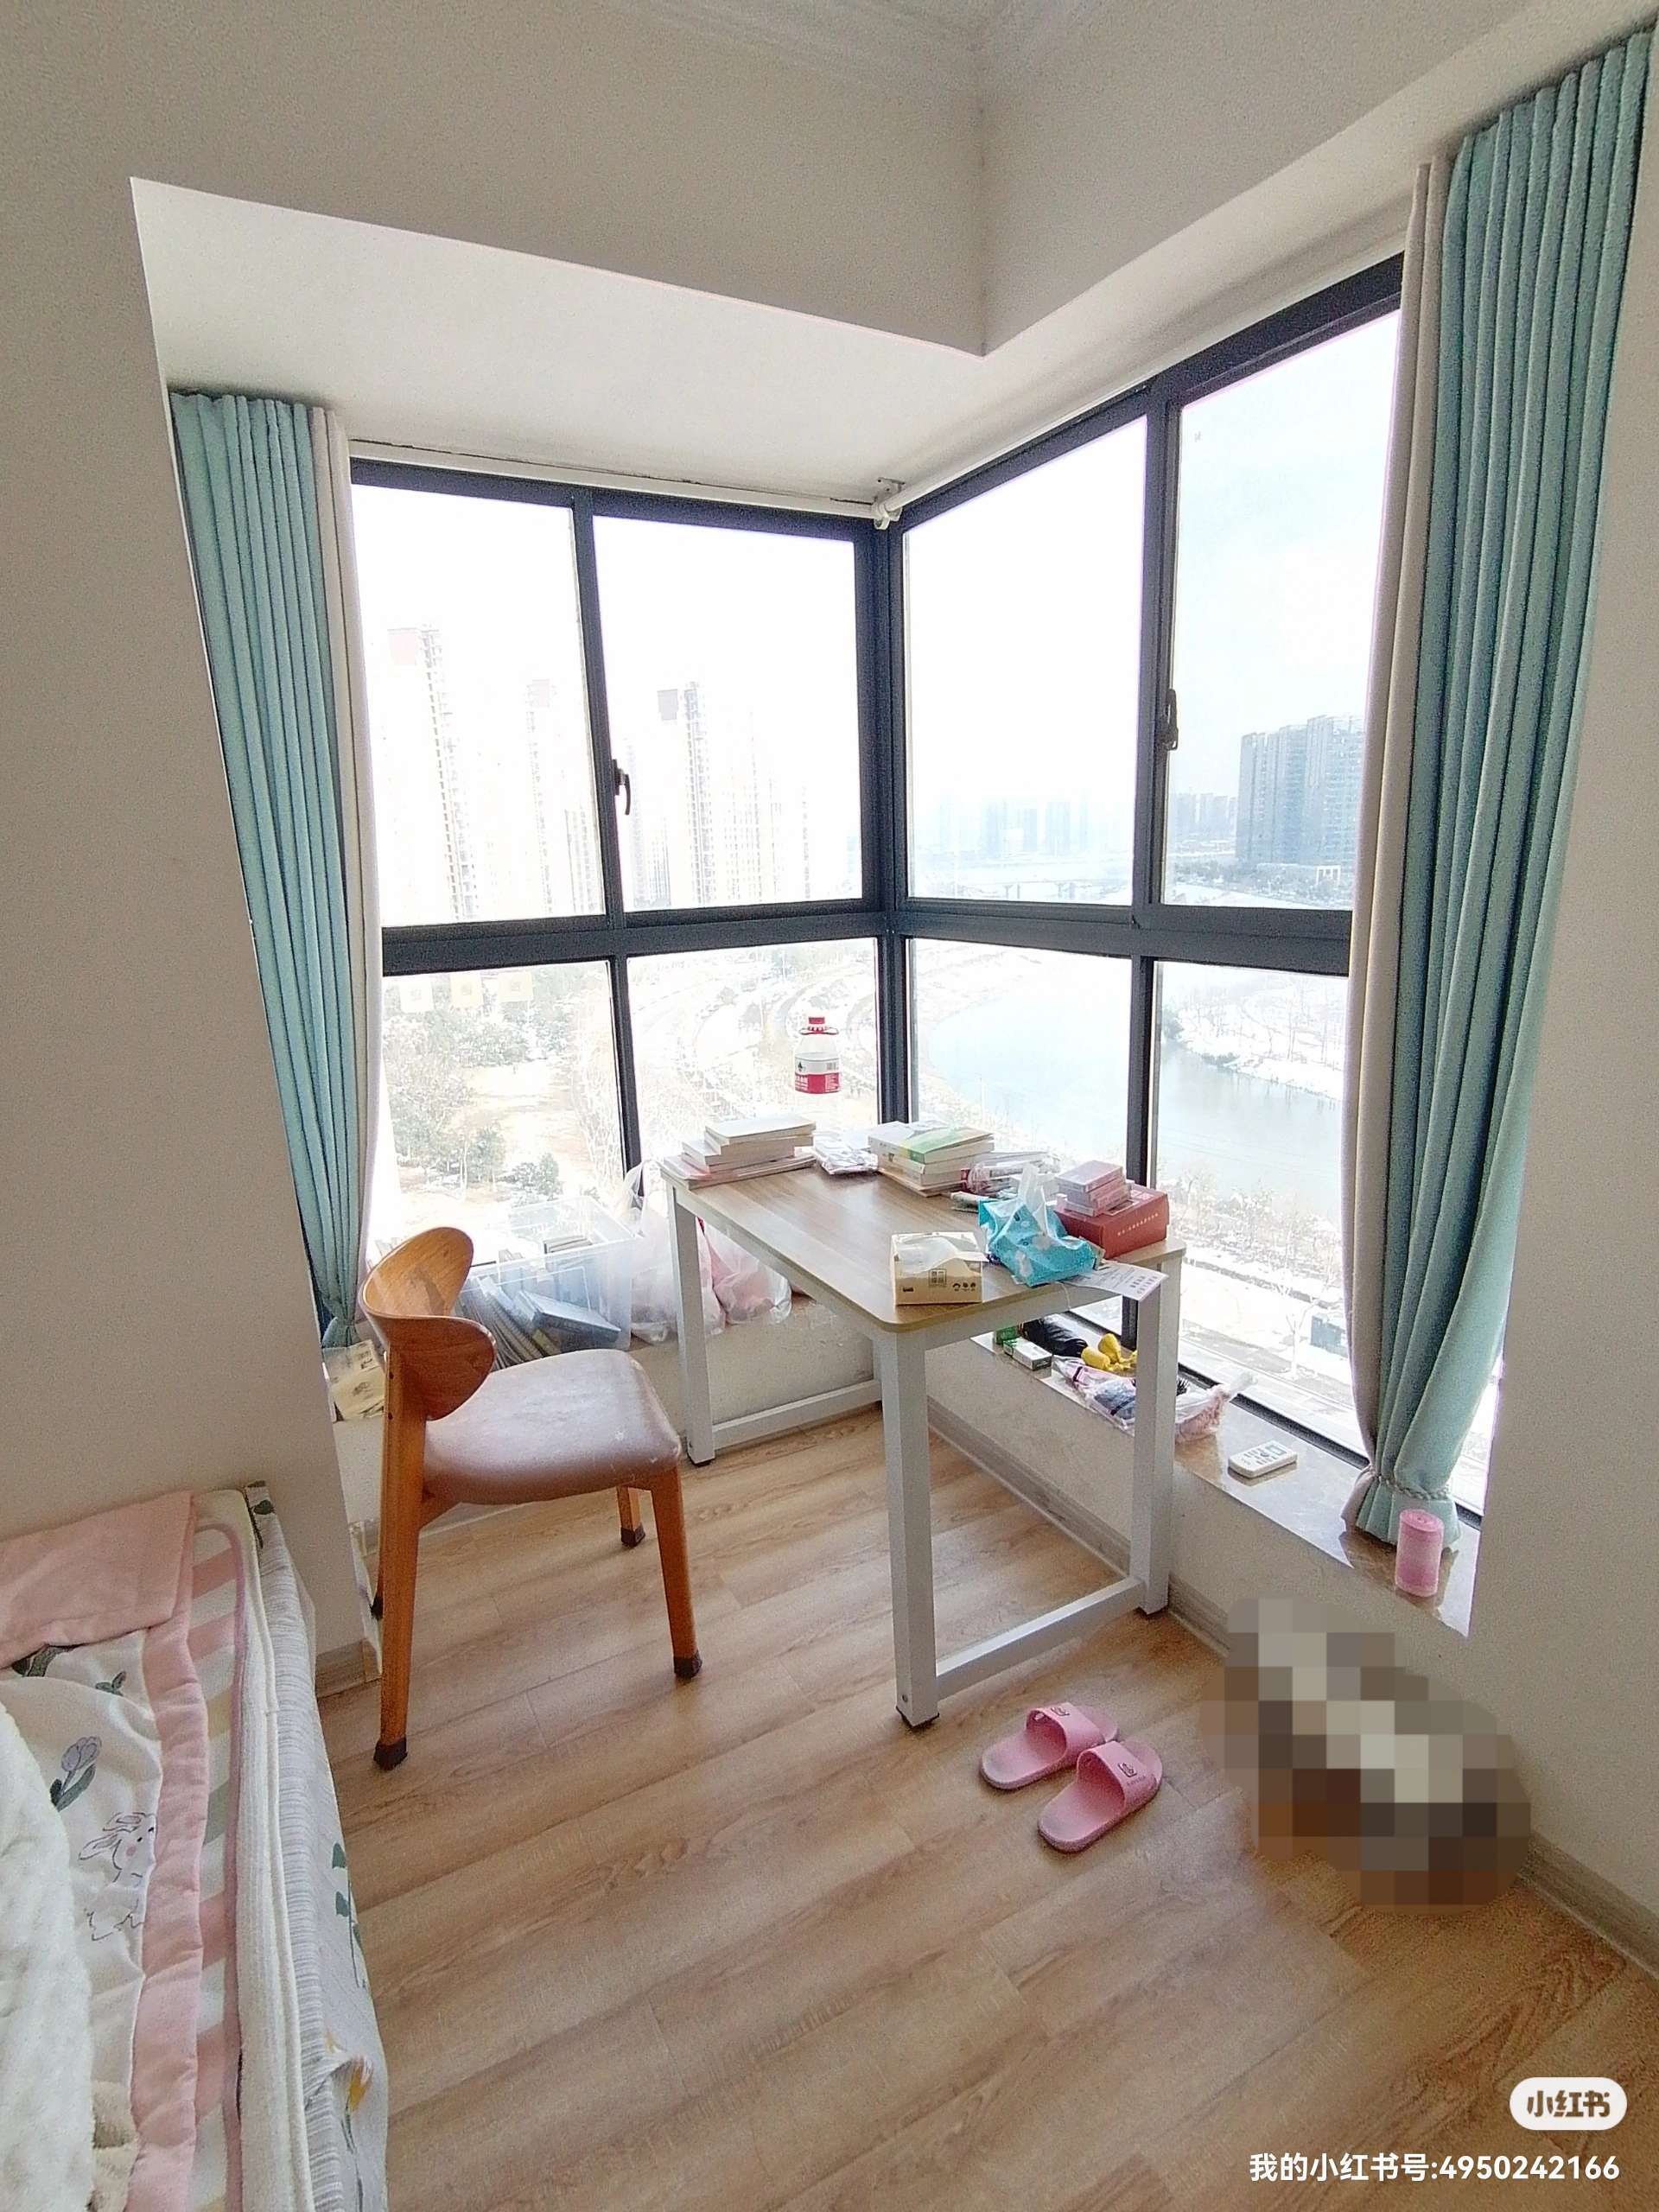 Changsha-Yuelu-Cozy Home,Clean&Comfy,“Friends”,LGBTQ Friendly